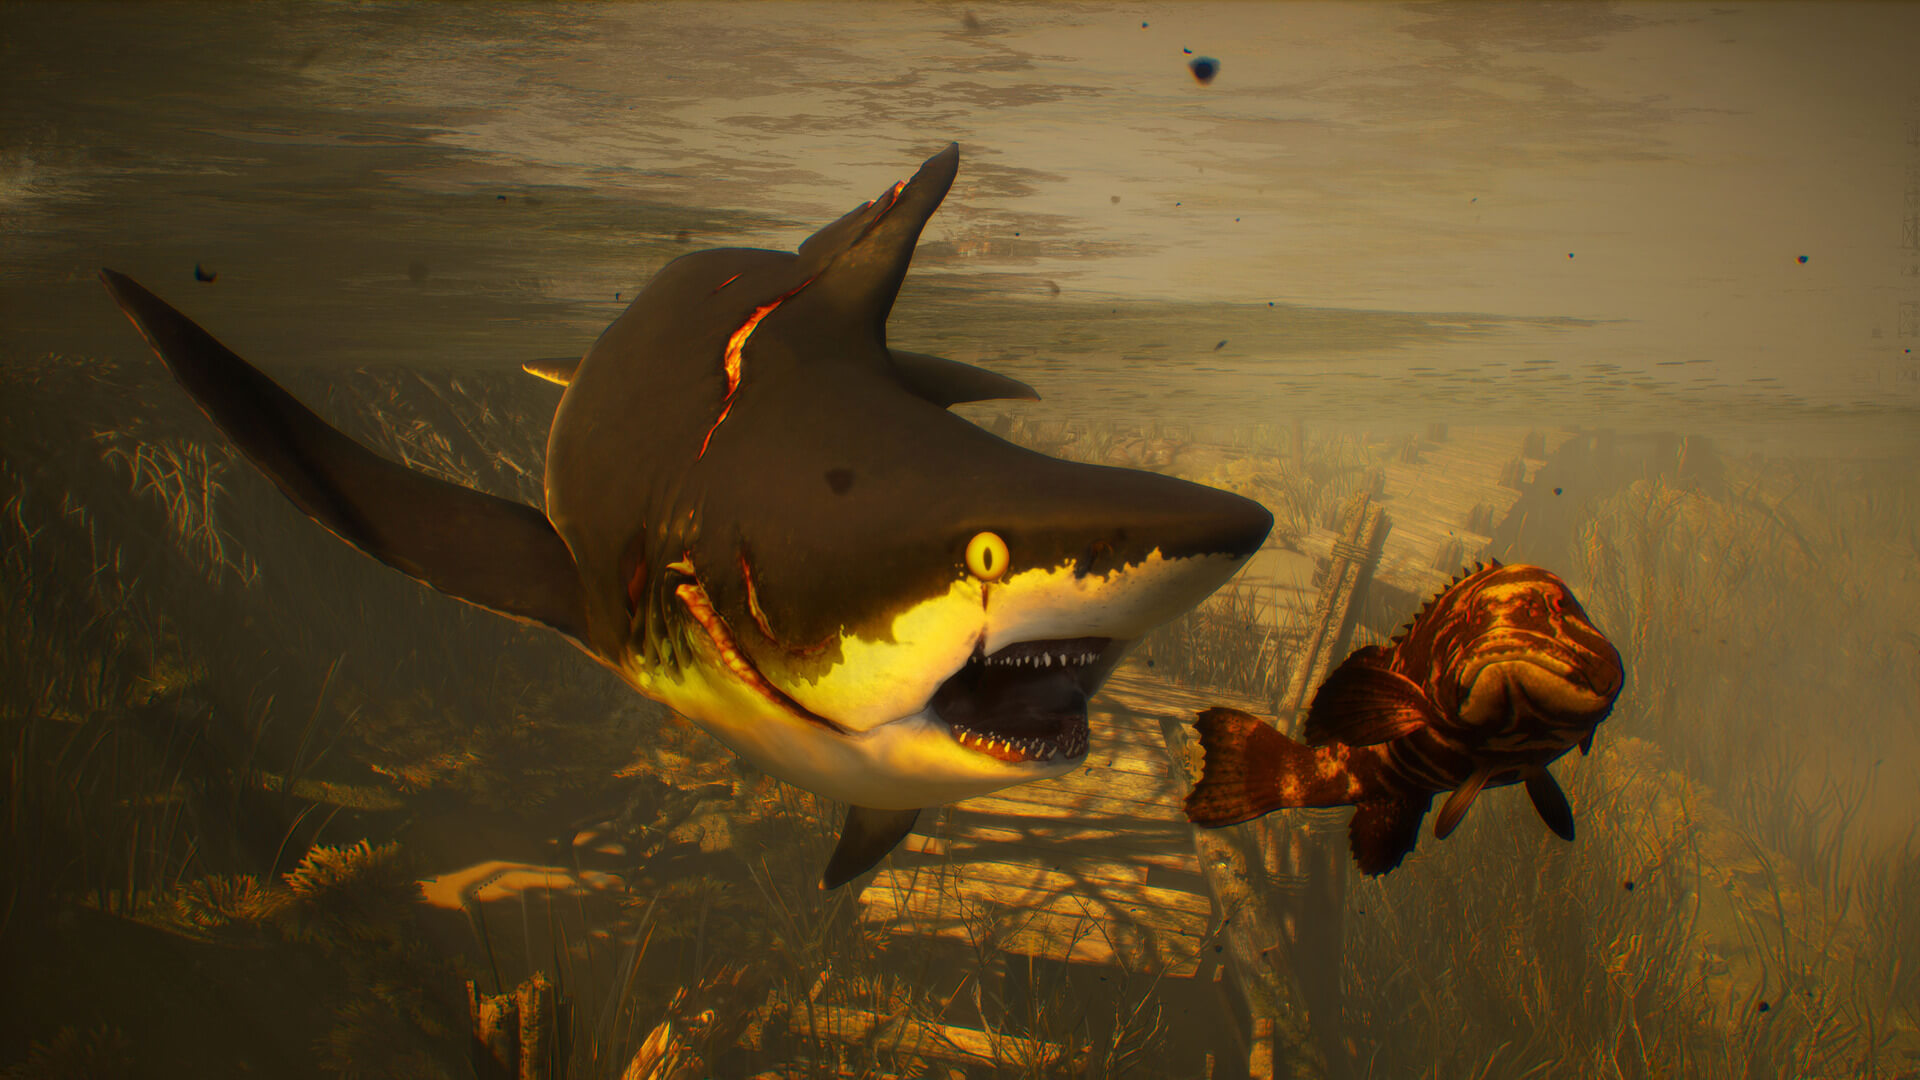 模拟游戏《食人鲨》全新截图放出 疯狂鲨鱼血腥杀戮